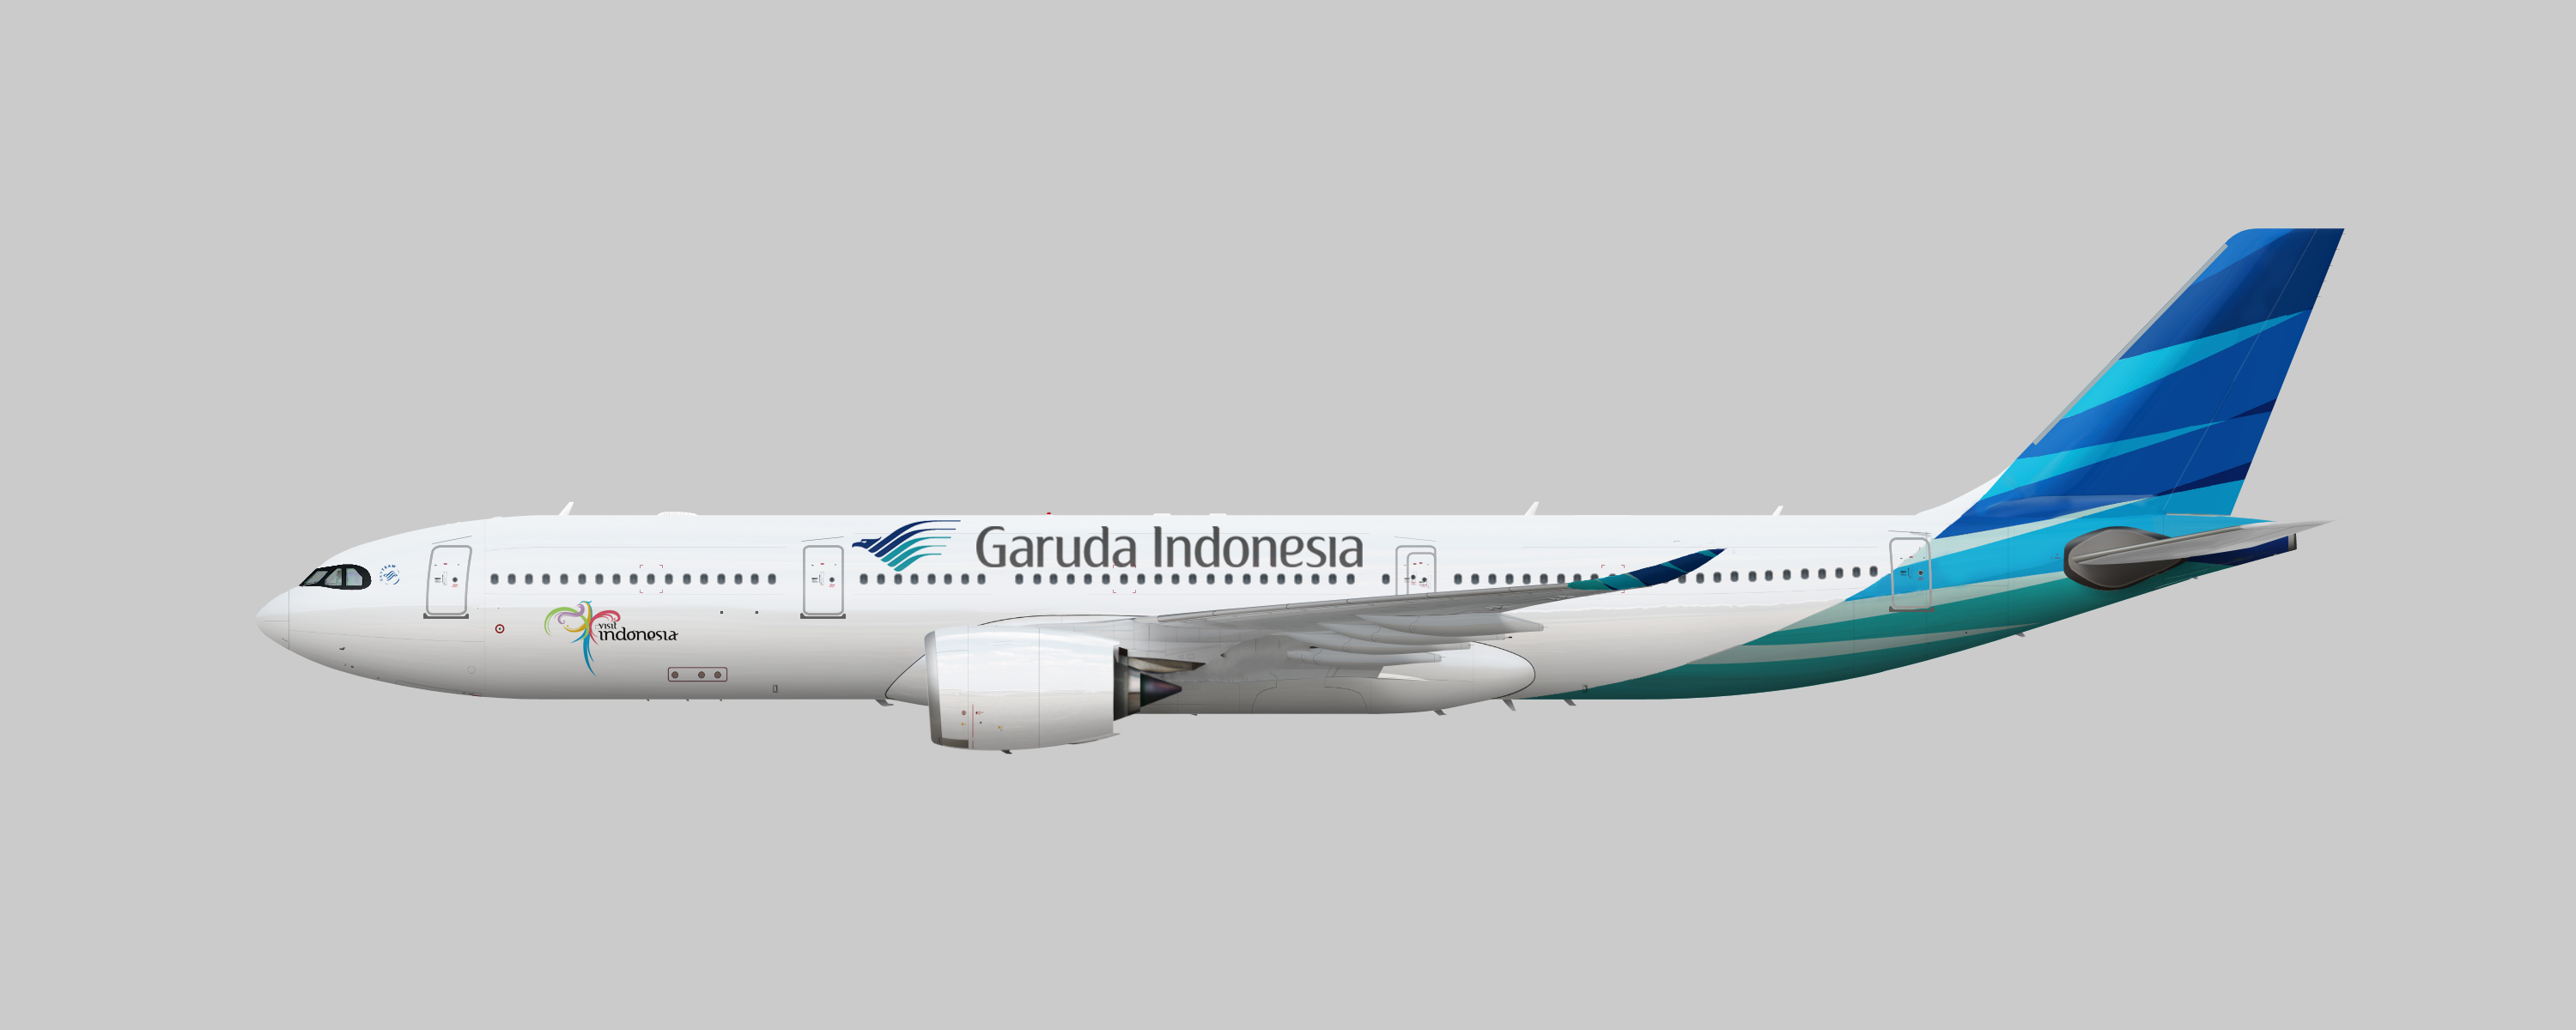 Garuda Indonesia Airbus A330-900neo.